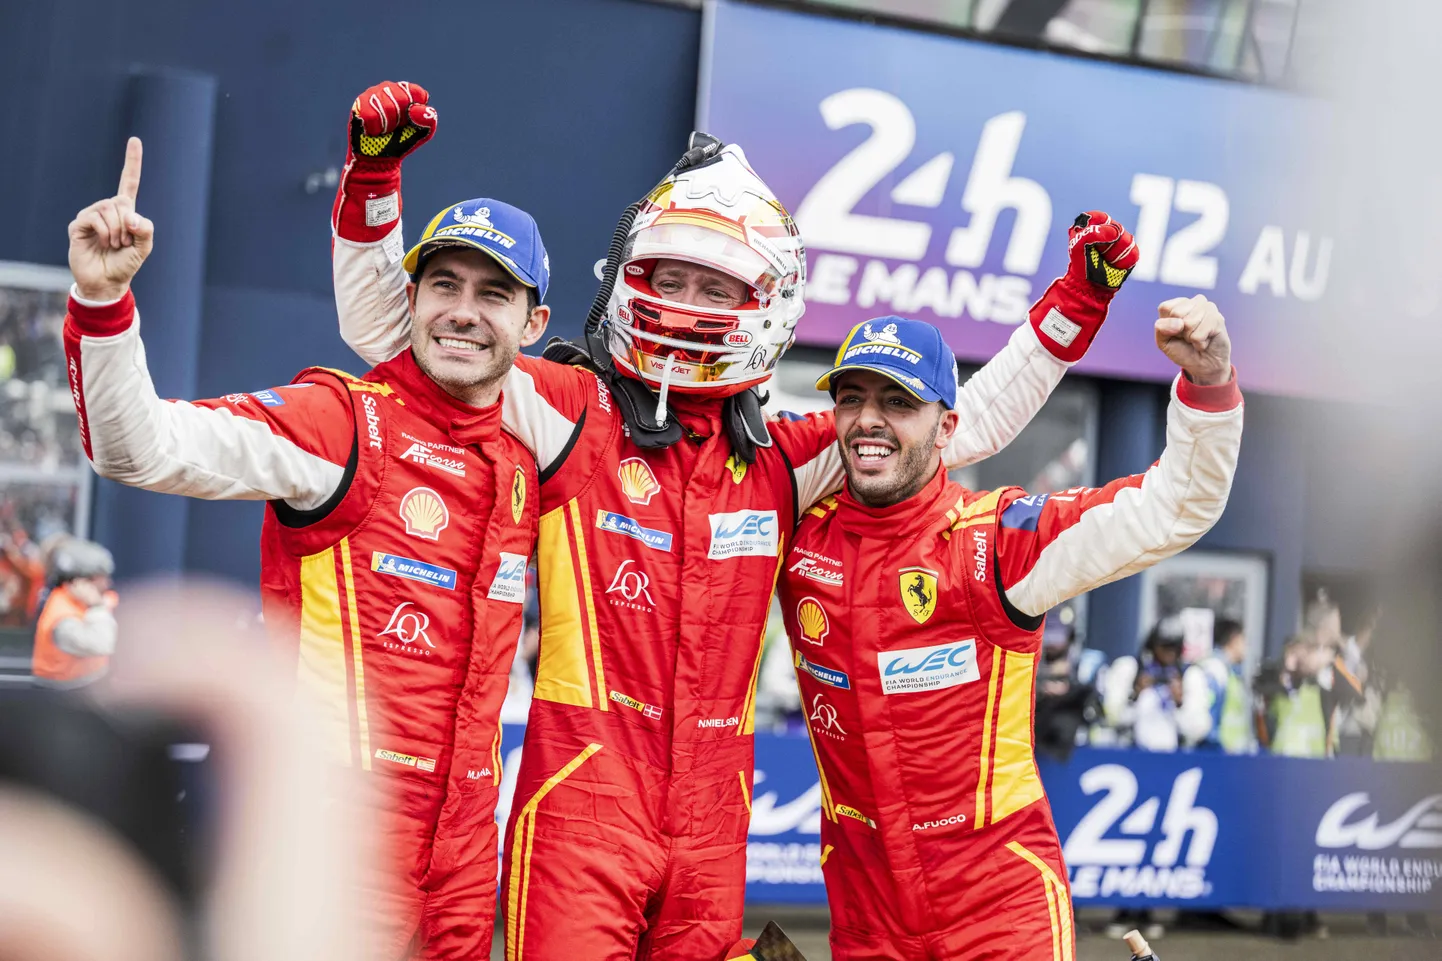 Antonio Fuoco, Miguel Molina ja Nicklas Nielsen krooniti Le Mans'i võitjateks.